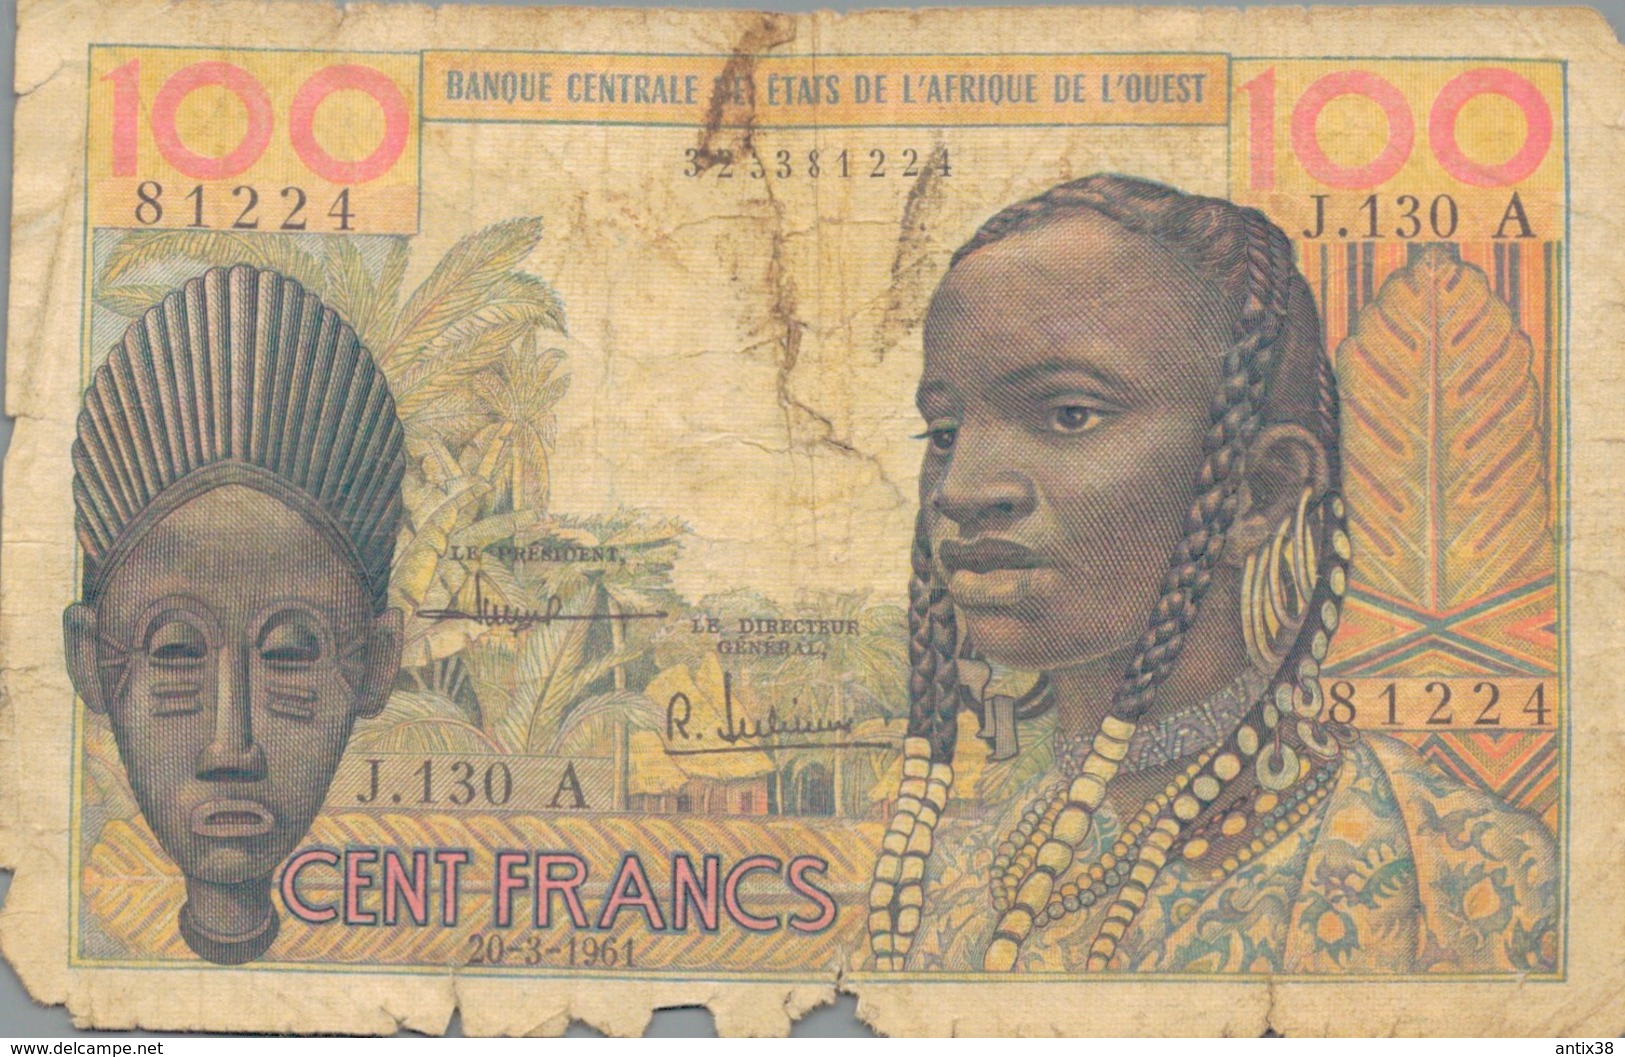 J25 - Billet 100 Francs - Banque Centrale Des Etats De L'Afrique De L'Ouest - 1961 - Other - Africa